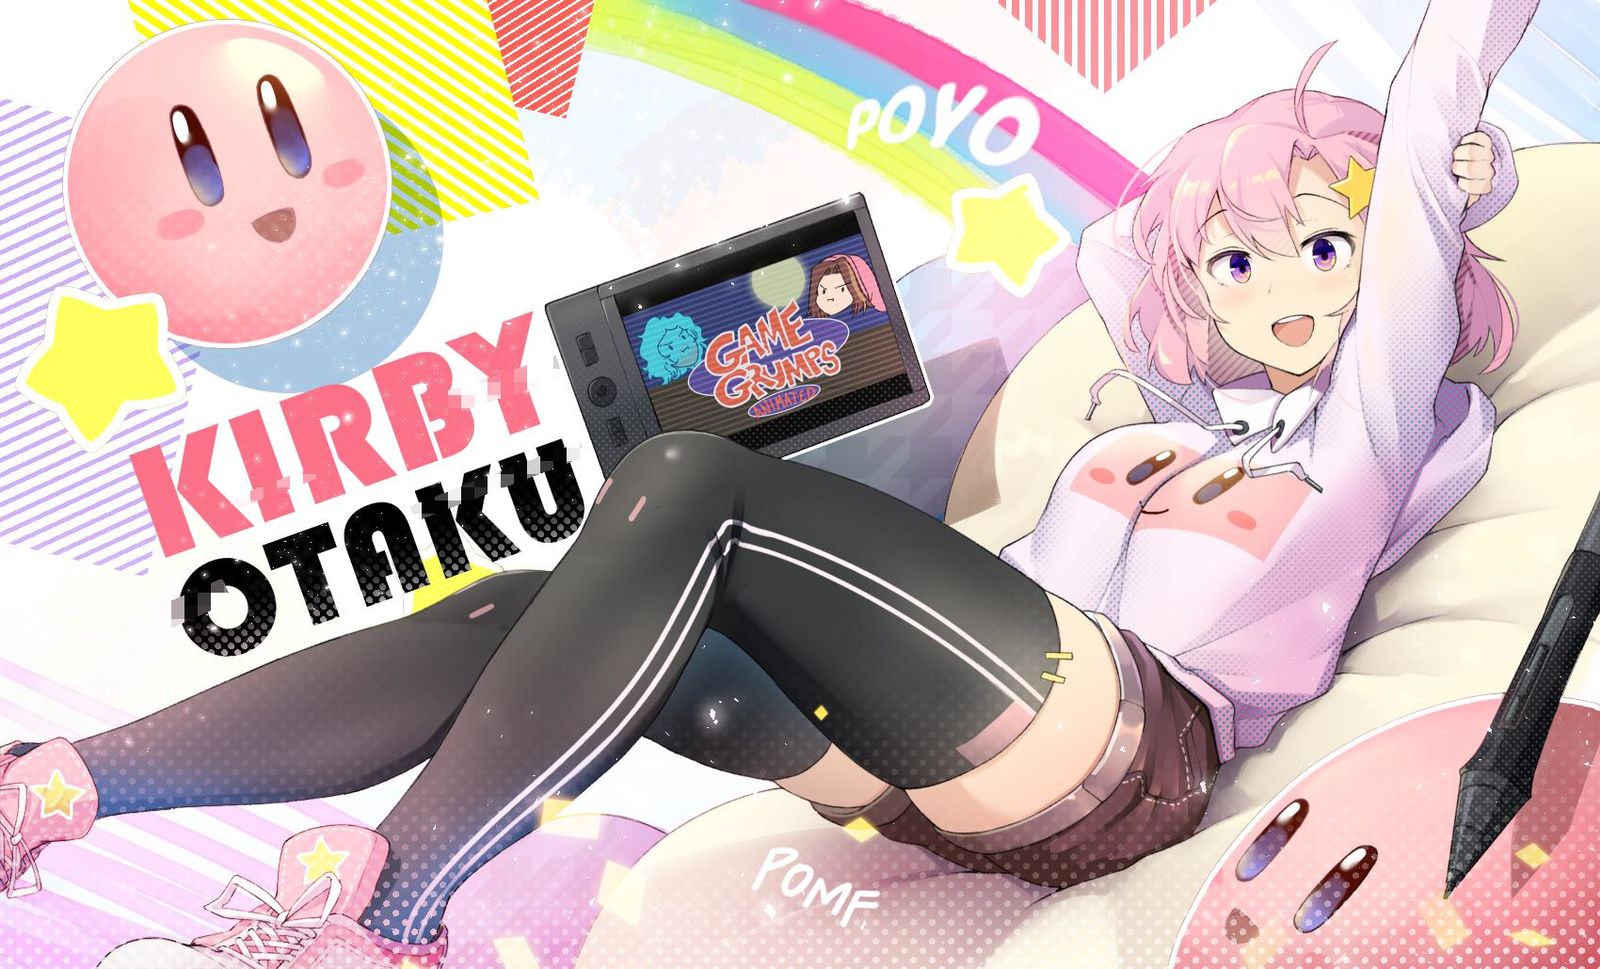 Fanart for KirbyOtaku